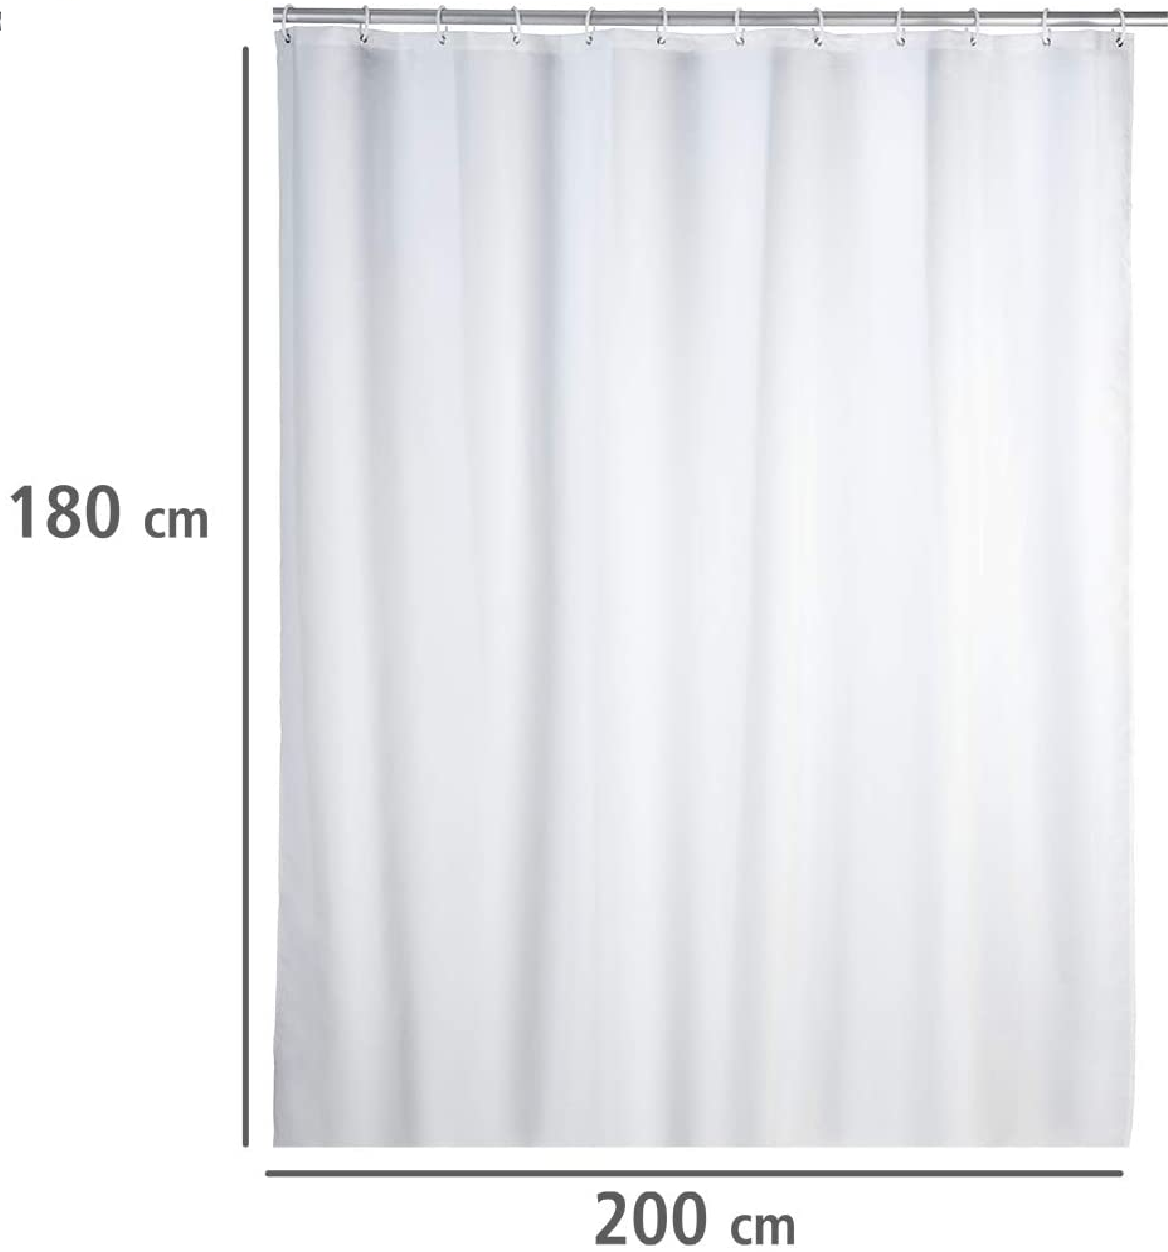 Anti-Schimmel Duschvorhang Uni White - Anti-Bakteriell, Textil, waschbar, wasserabweisend, schimmelresistent, mit 12 Duschvorhangringen, Polyester, 180 x 200 cm, Weiß